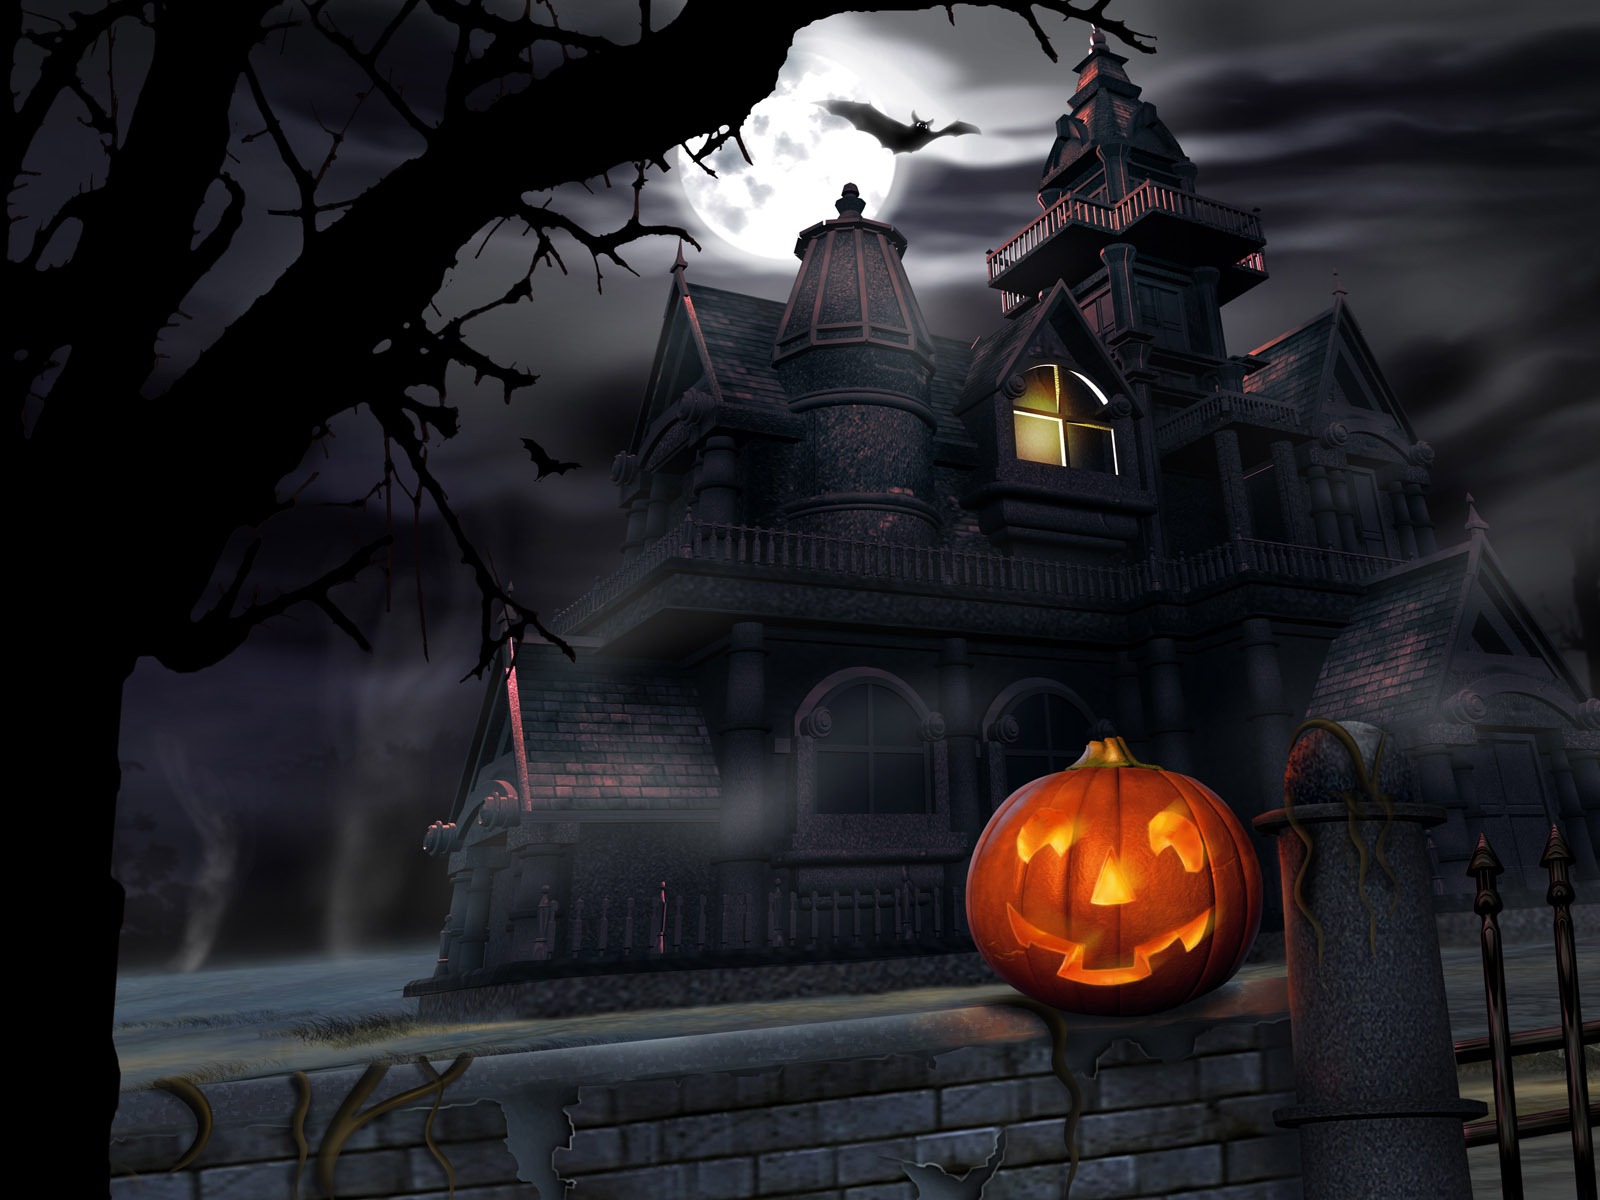 Fondos de Halloween temáticos (4) #3 - 1600x1200